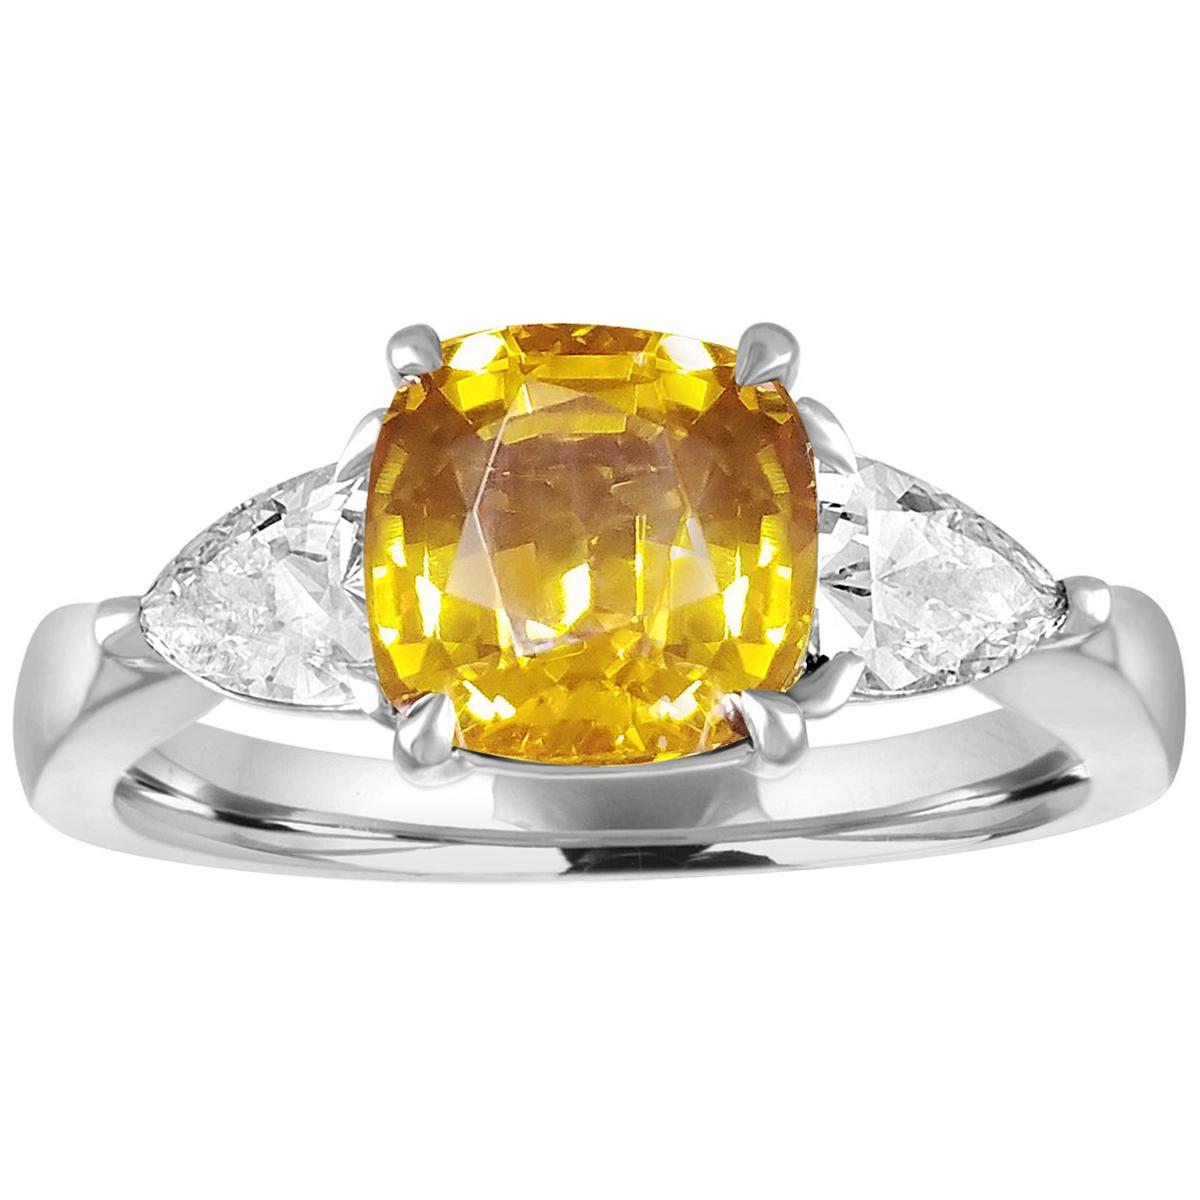 Goldring mit AGL-zertifiziertem 3,16 Karat orange-gelbem Saphir und Diamant im Kissenschliff